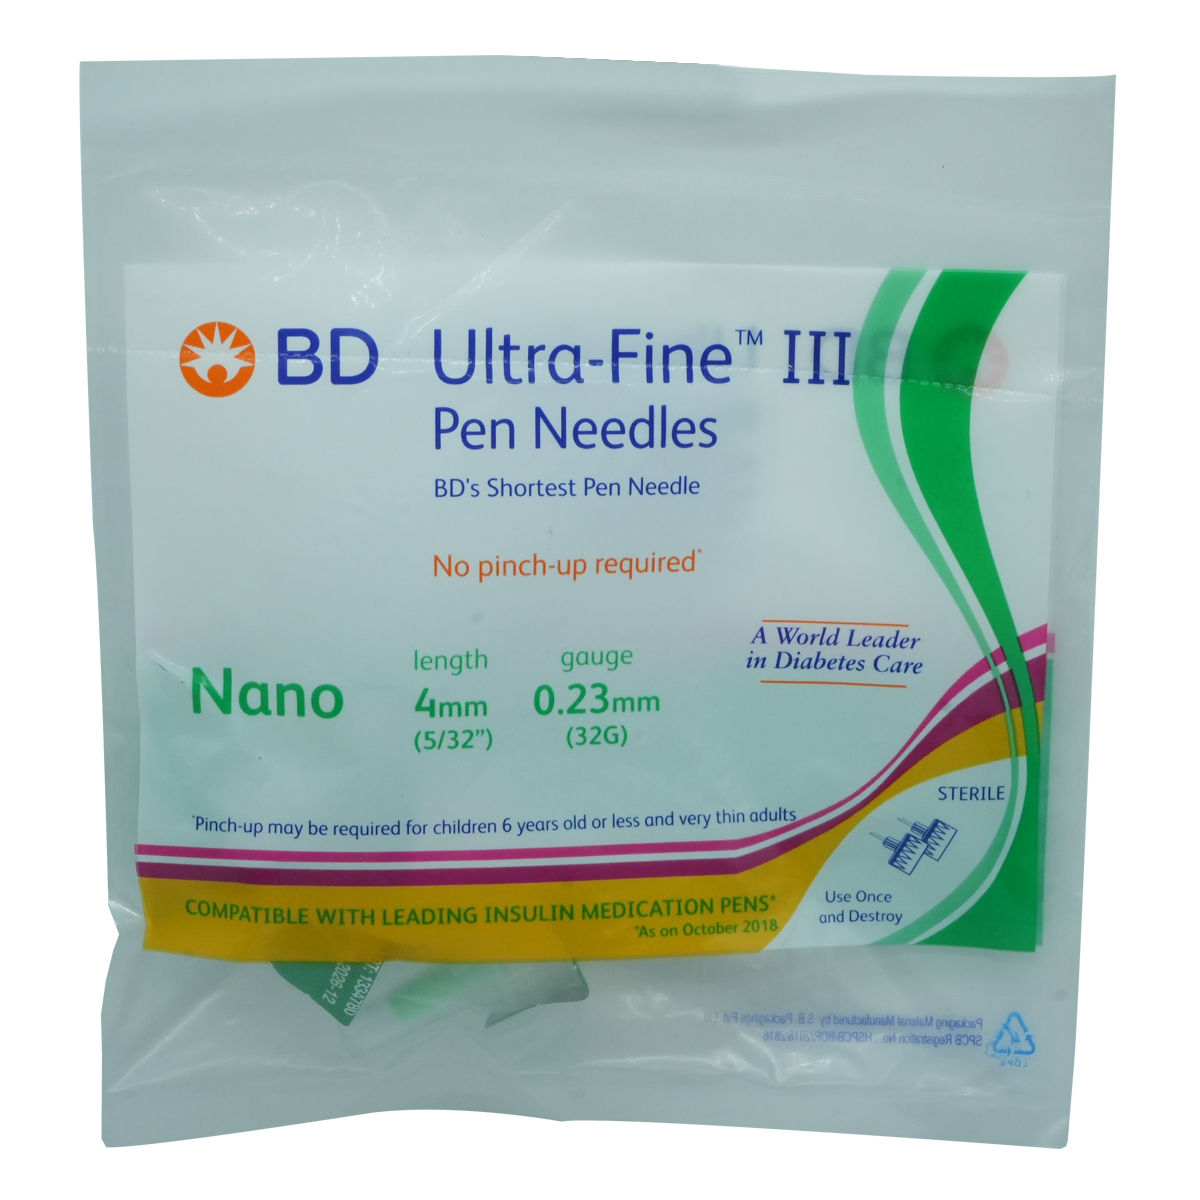 MICROSIDD BD Ultra-Fine III Pen Needles Medical Needle Price in India - Buy  MICROSIDD BD Ultra-Fine III Pen Needles Medical Needle online at